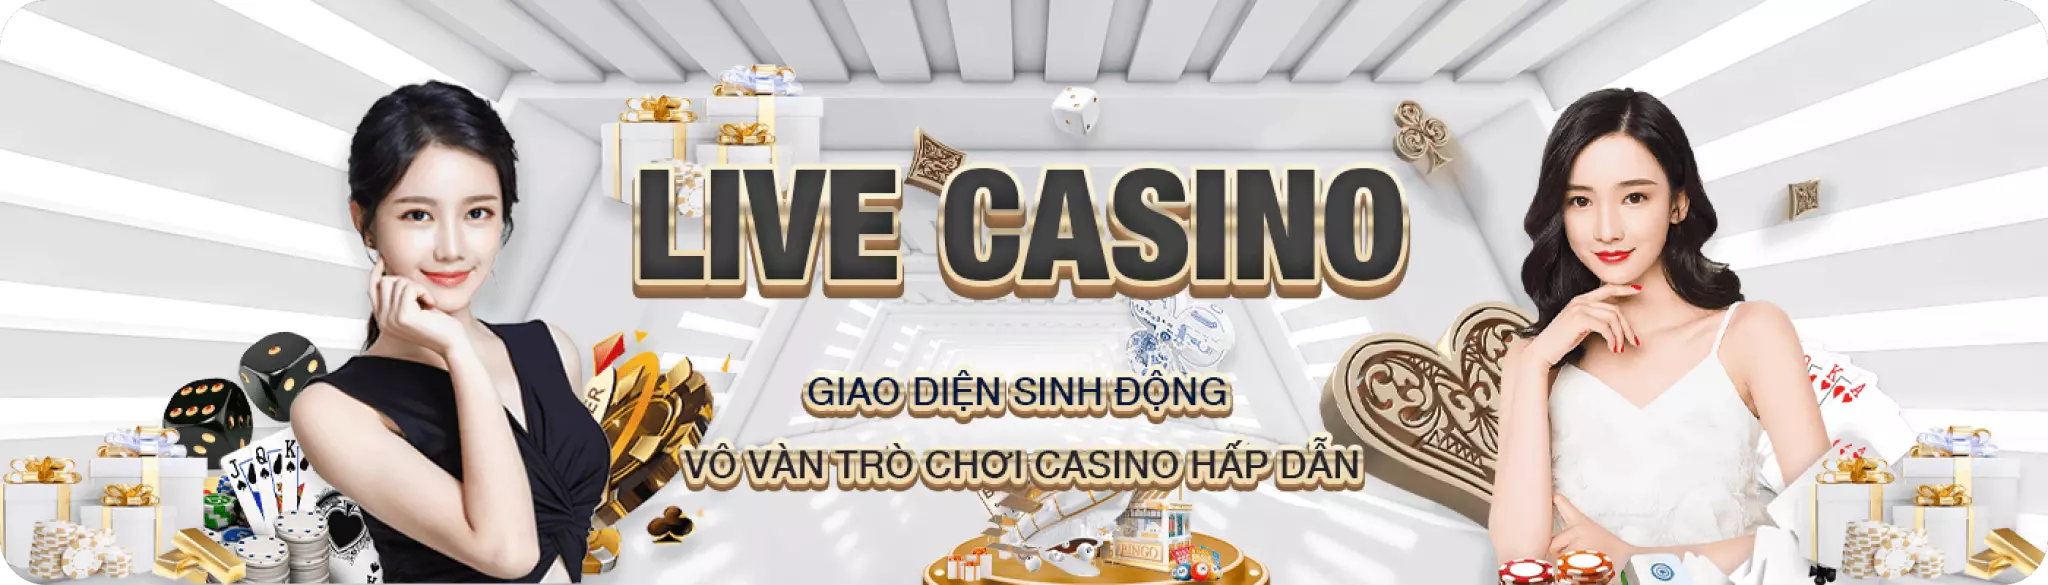 Live Casino Banner K88